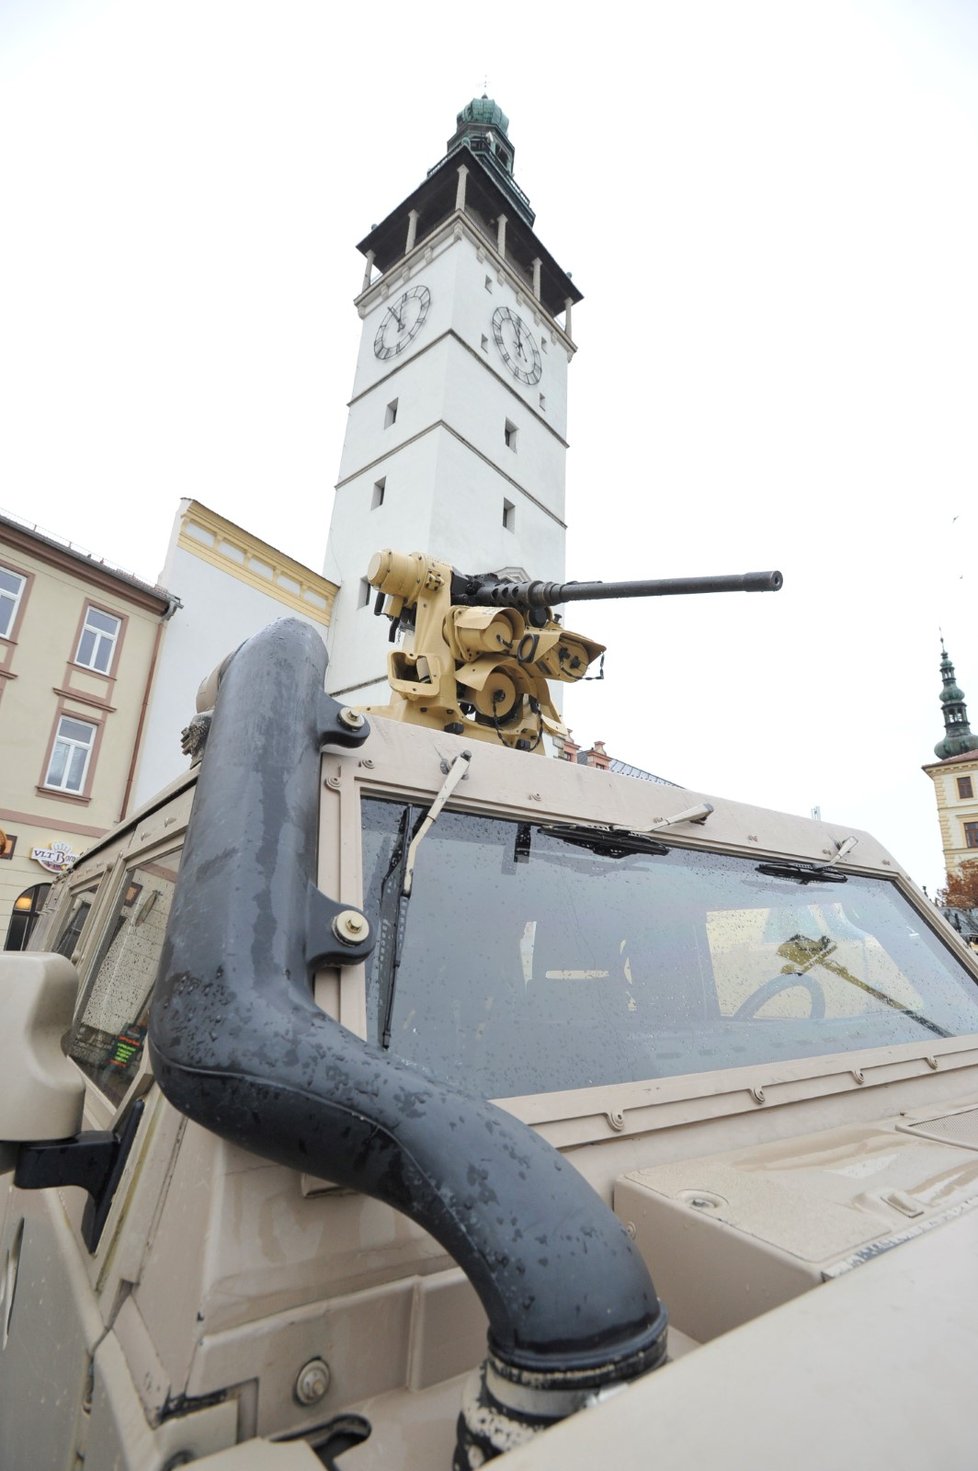 Ukázky armádních obrněných vozidel byly 27. října součástí slavnostní vojenské přísahy ve Vyškově. Na snímku je kulomet na střeše lehkého obrněného vozidla Iveco.